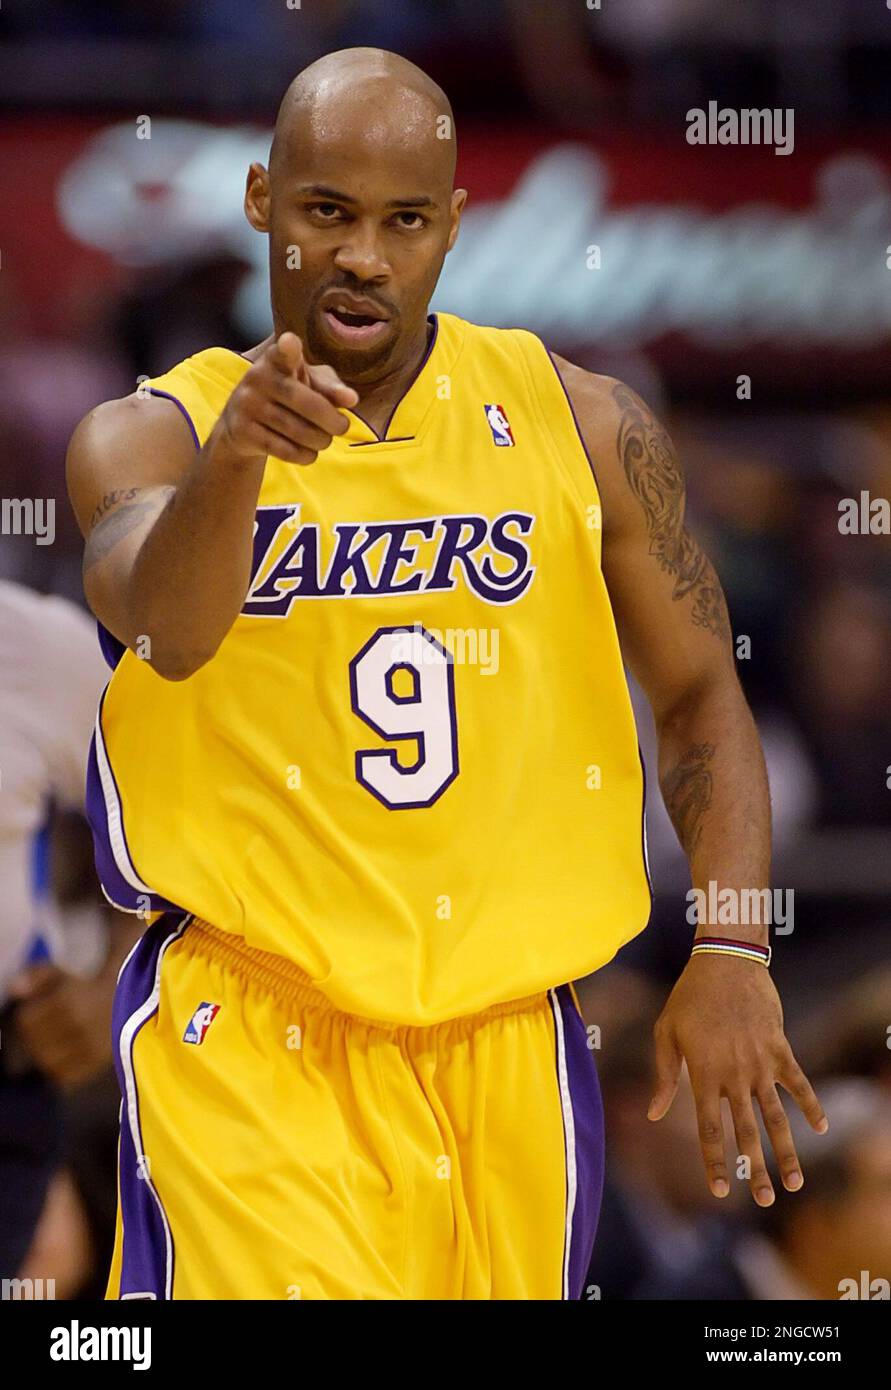 Kings 105, Lakers 99